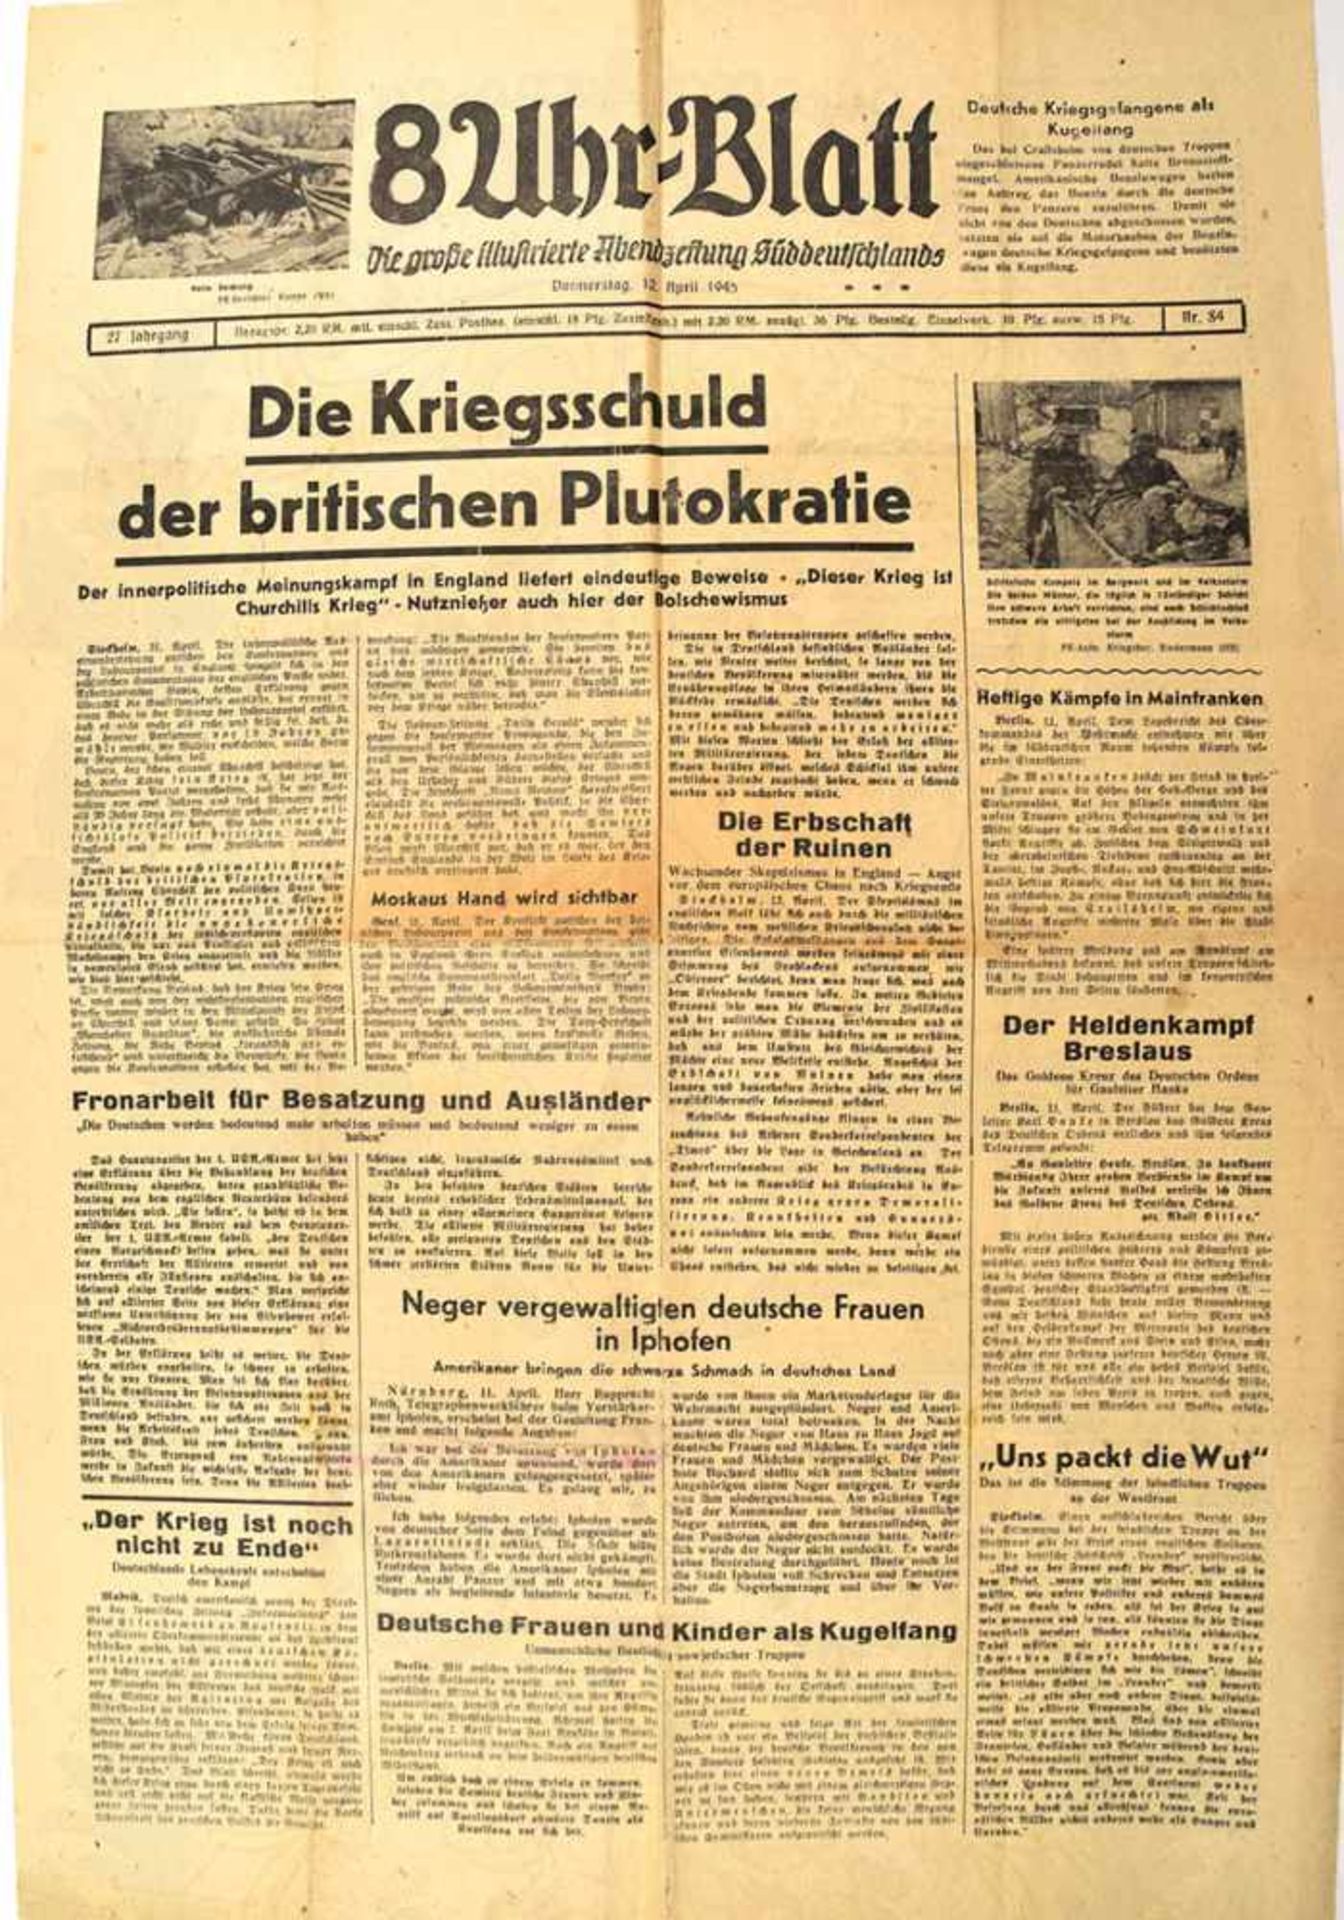 8-UHR-BLATT, „Abendzeitung Süddeutschlands“ vom 12.4.1945, 1-Blatt-Ausgabe, „Die Kriegsschuld der